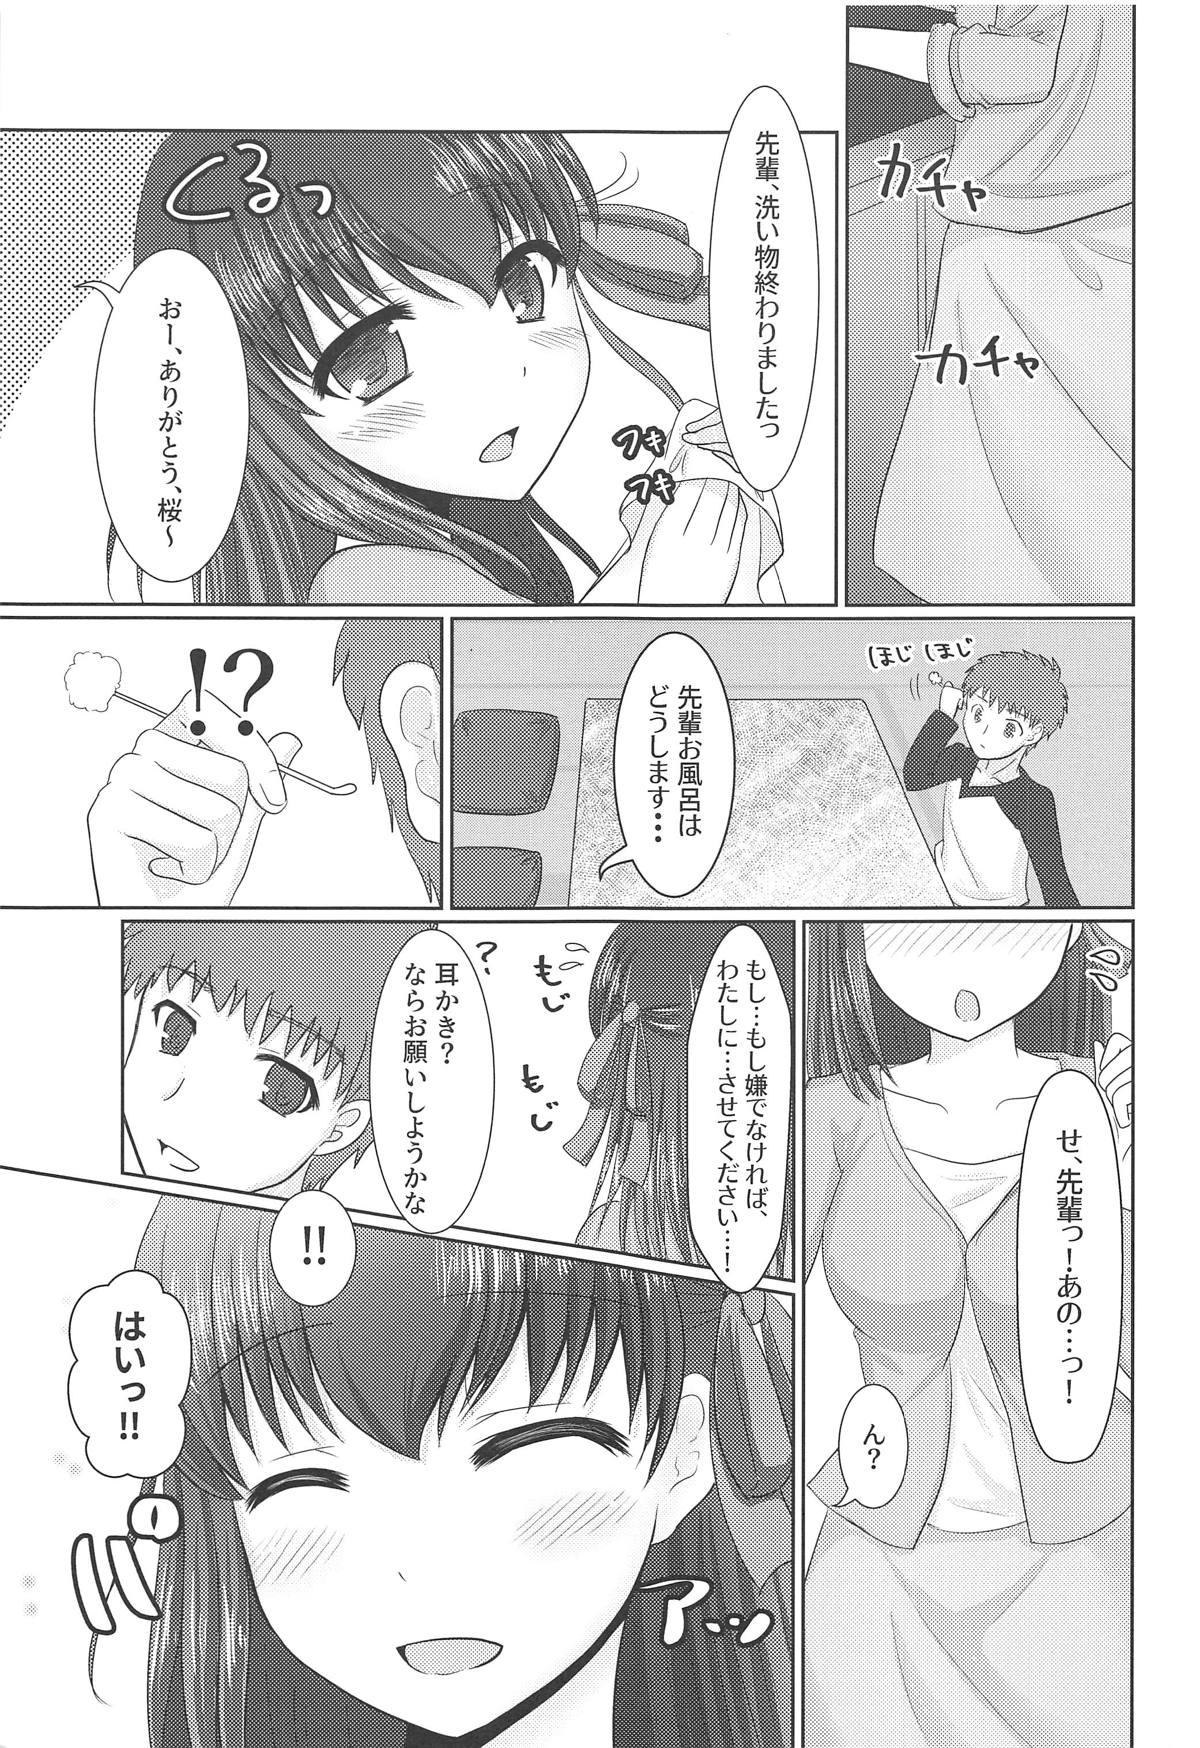 Nerd Hiza no Ue ni Sakura - Fate stay night Ecchi - Page 4